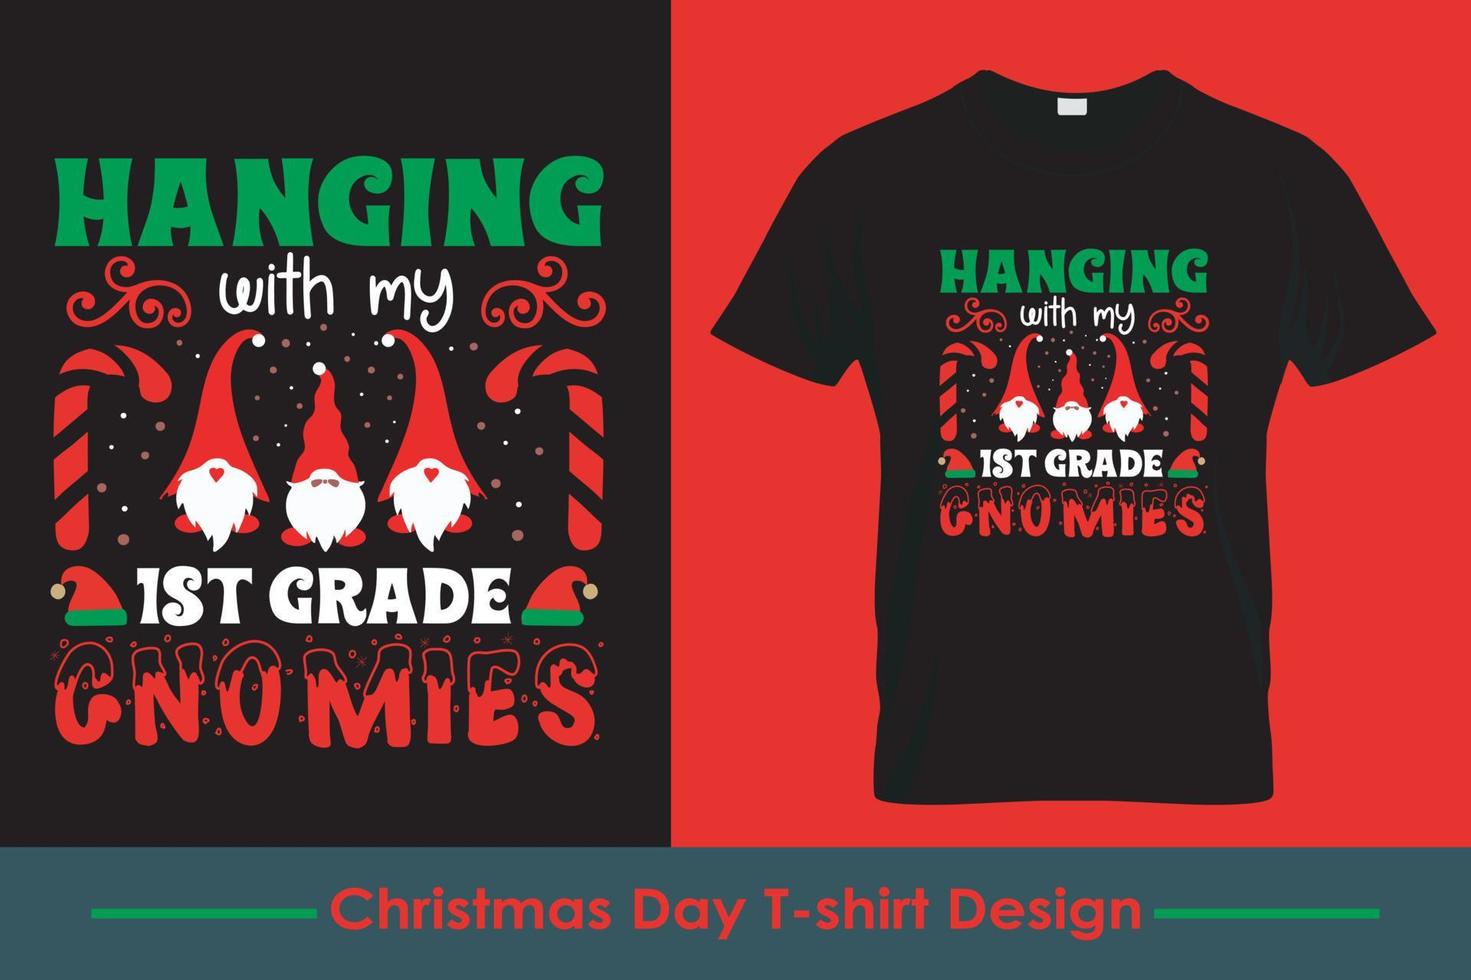 feliz navidad y camiseta amante del vino. diseño de camisetas navideñas navideñas. diseño vectorial de tipografía. vector profesional